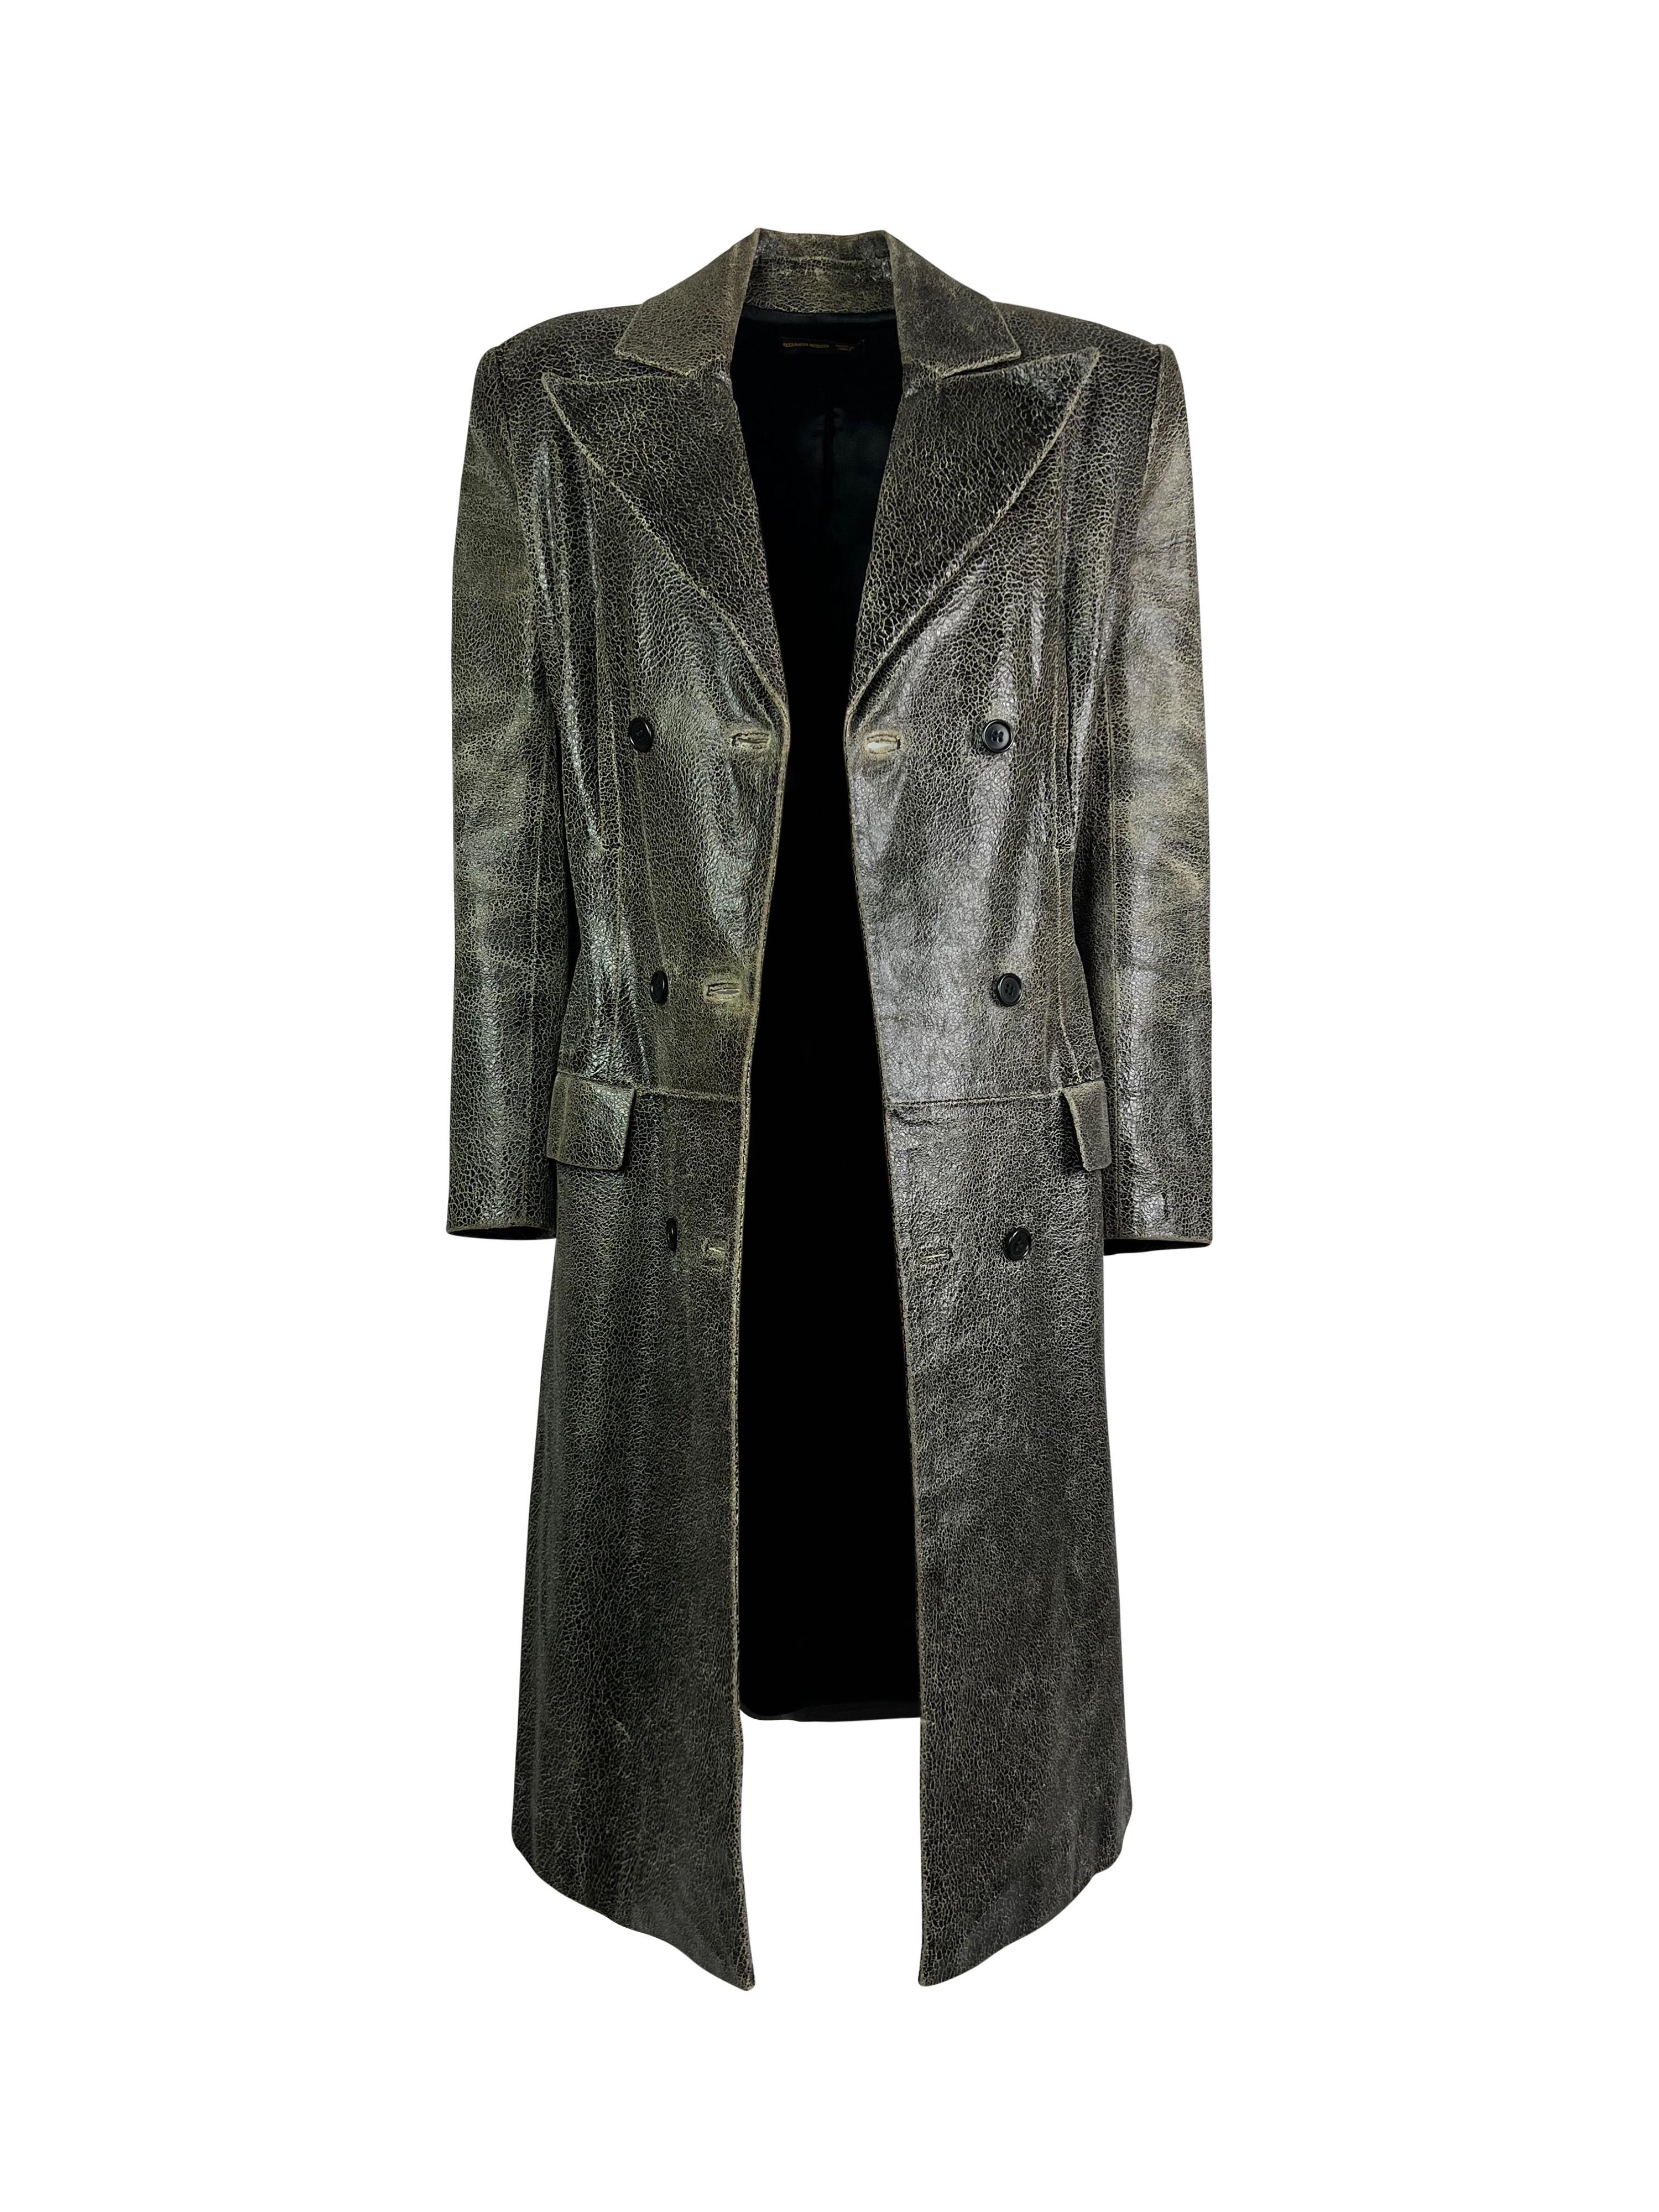 Women's or Men's FW 1999 Alexander McQueen The Overlook Cracked Leather Coat